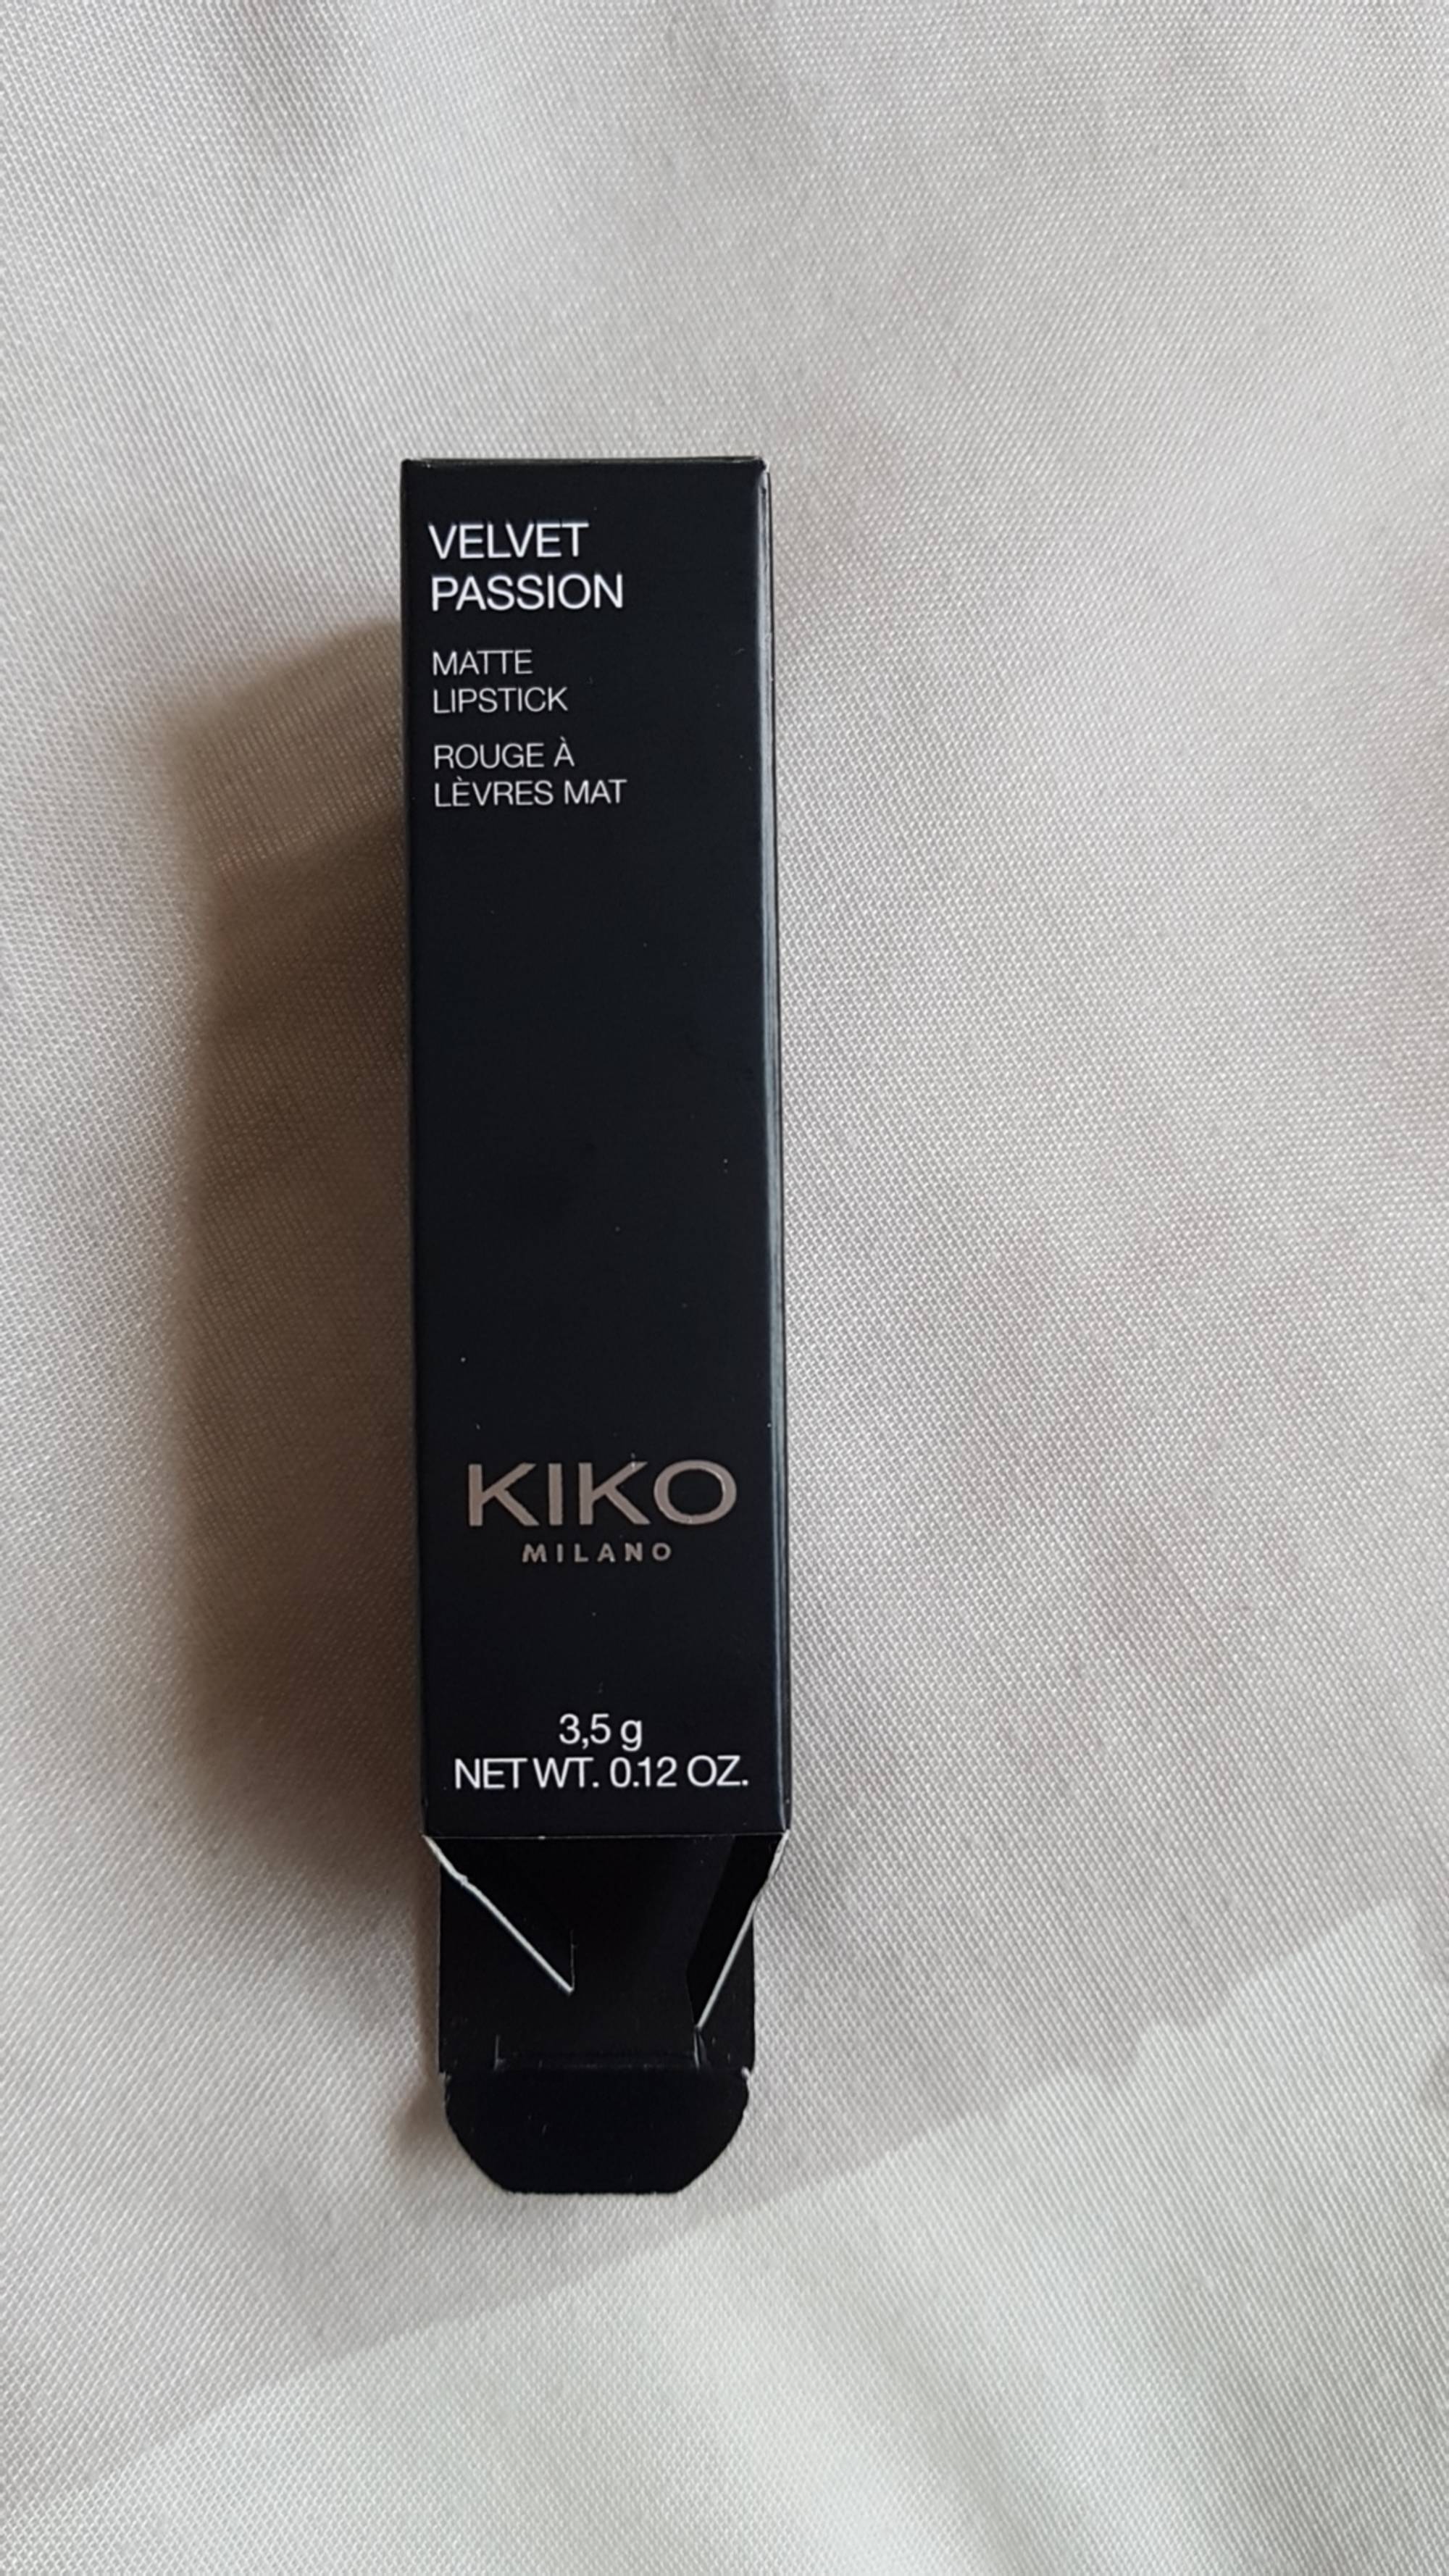 KIKO - Velvet passion - Matte lipstick